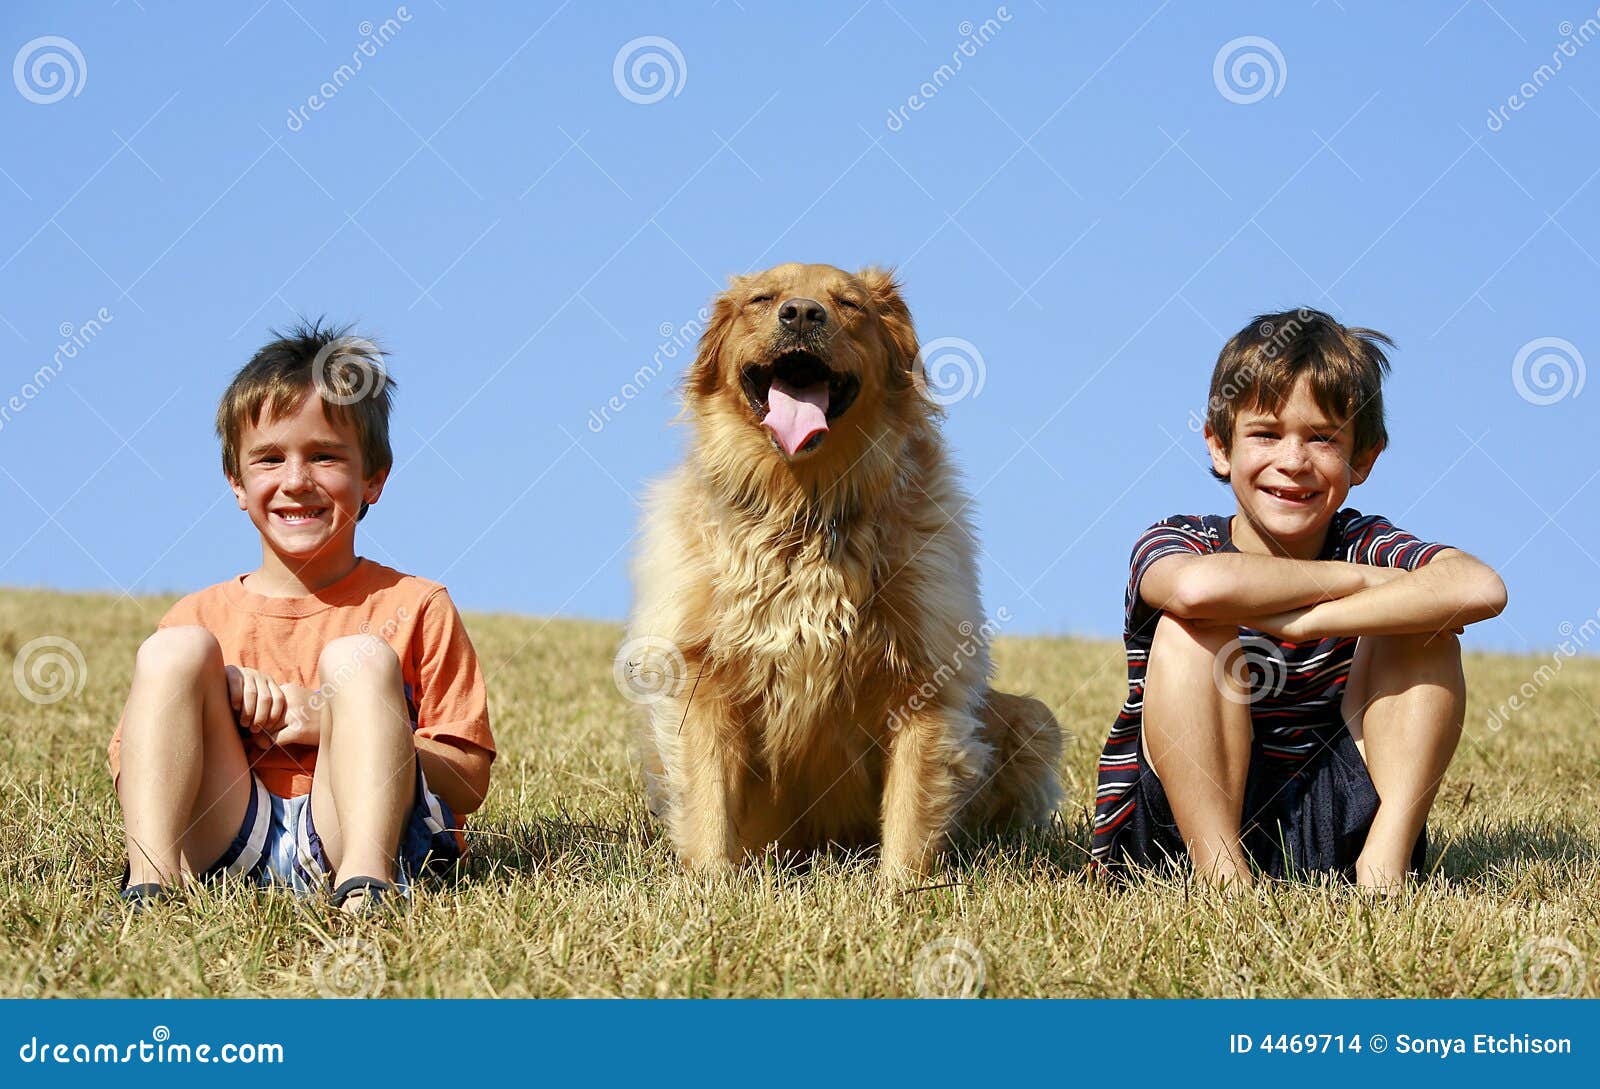 Мальчик и две собаки. Два мальчика и собака. Мальчик с щенком фото. Мальчик с собакой фото. Dreamstime мальчик с собака.